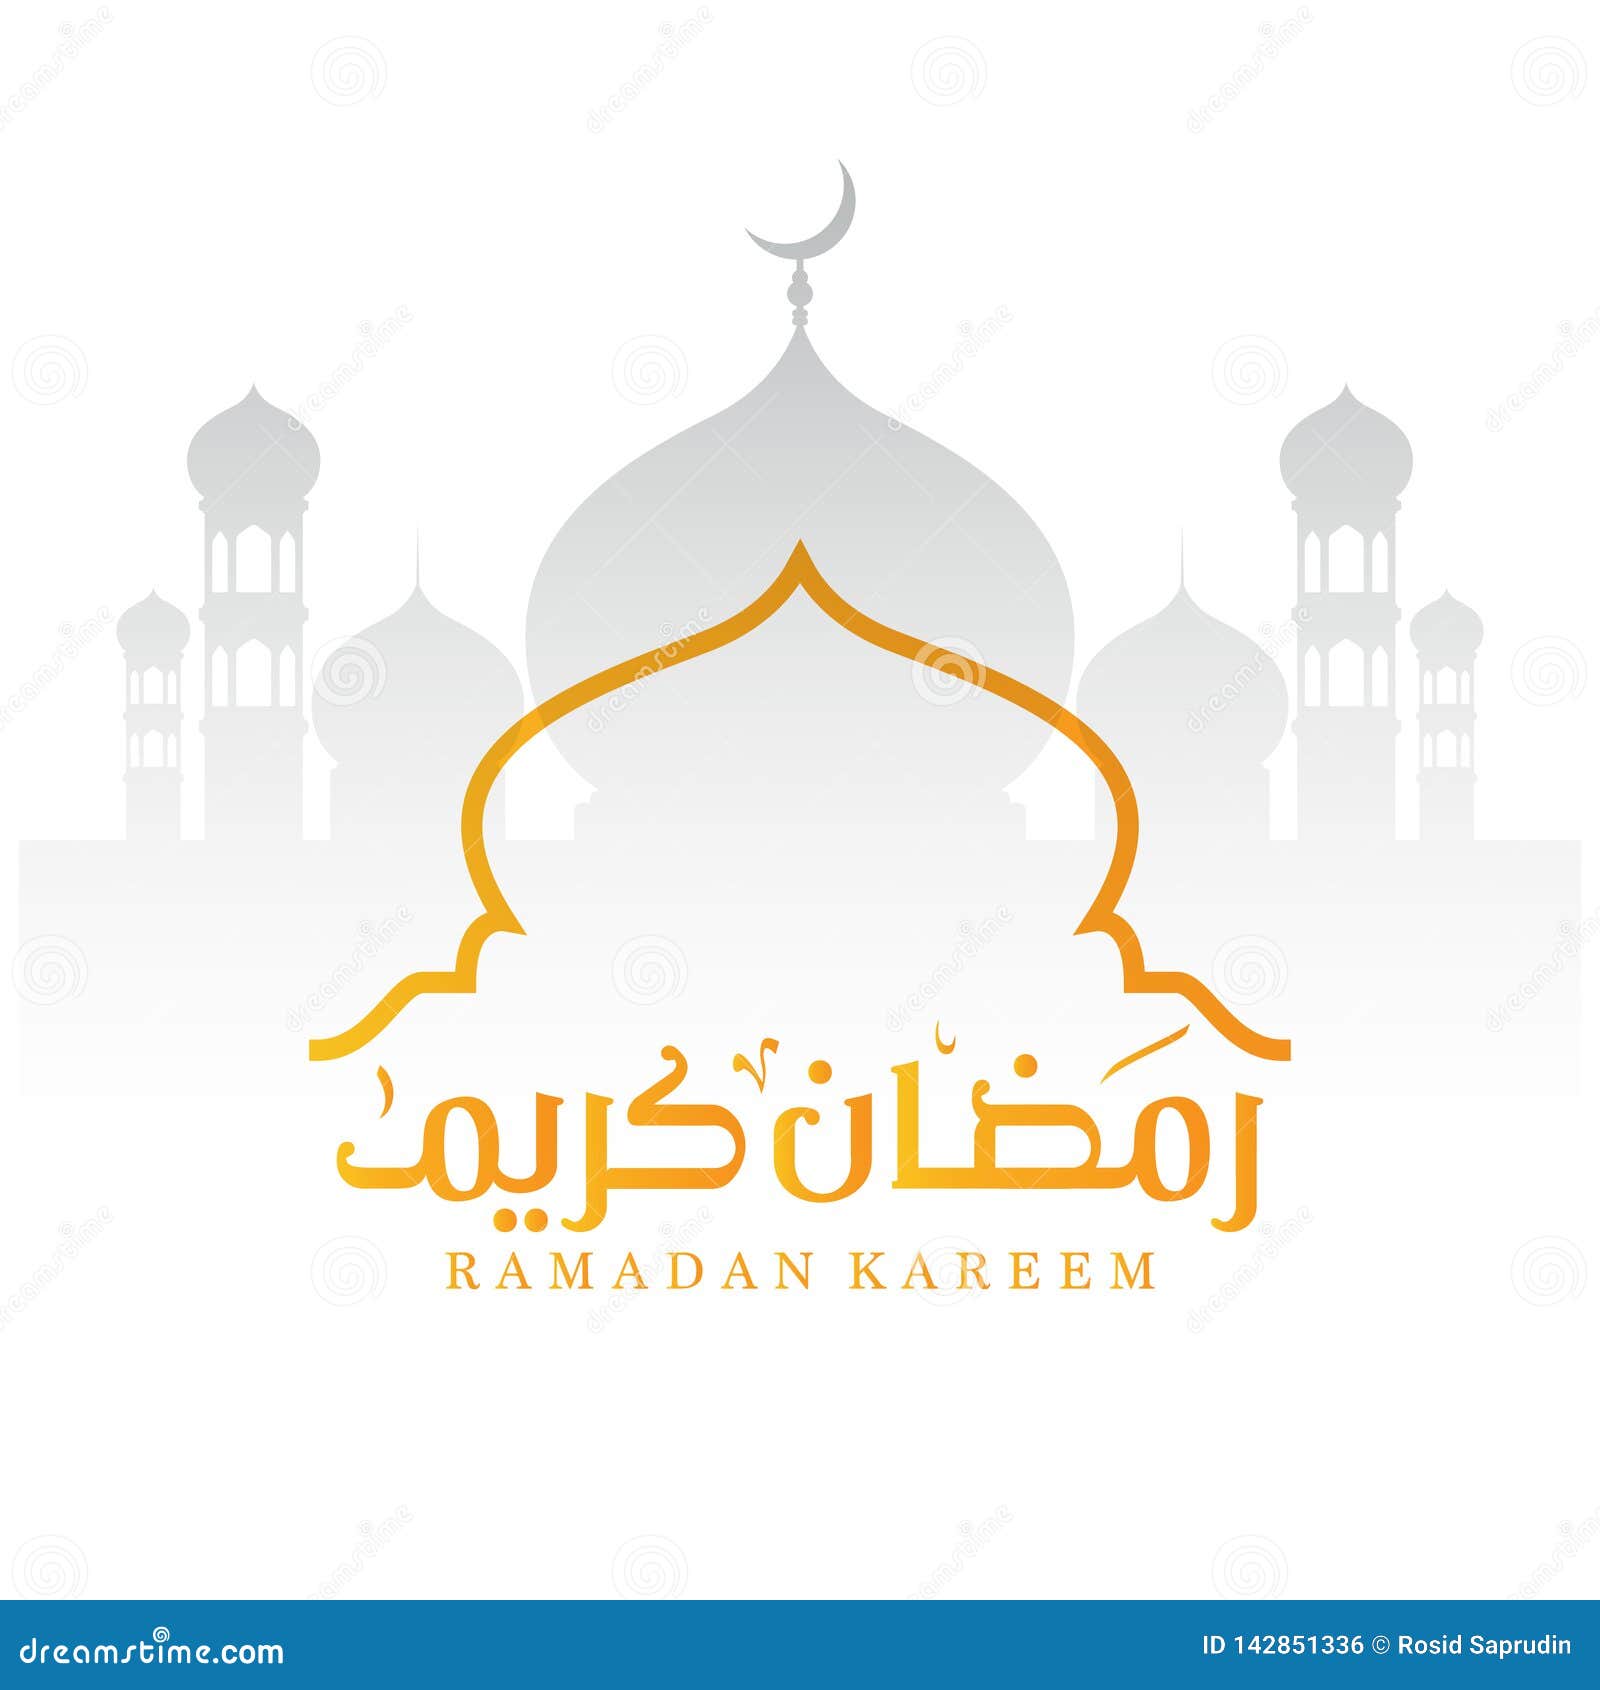 Conception De Ramadan Kareem Du Croissant Et Du Dôme De La Silhouette